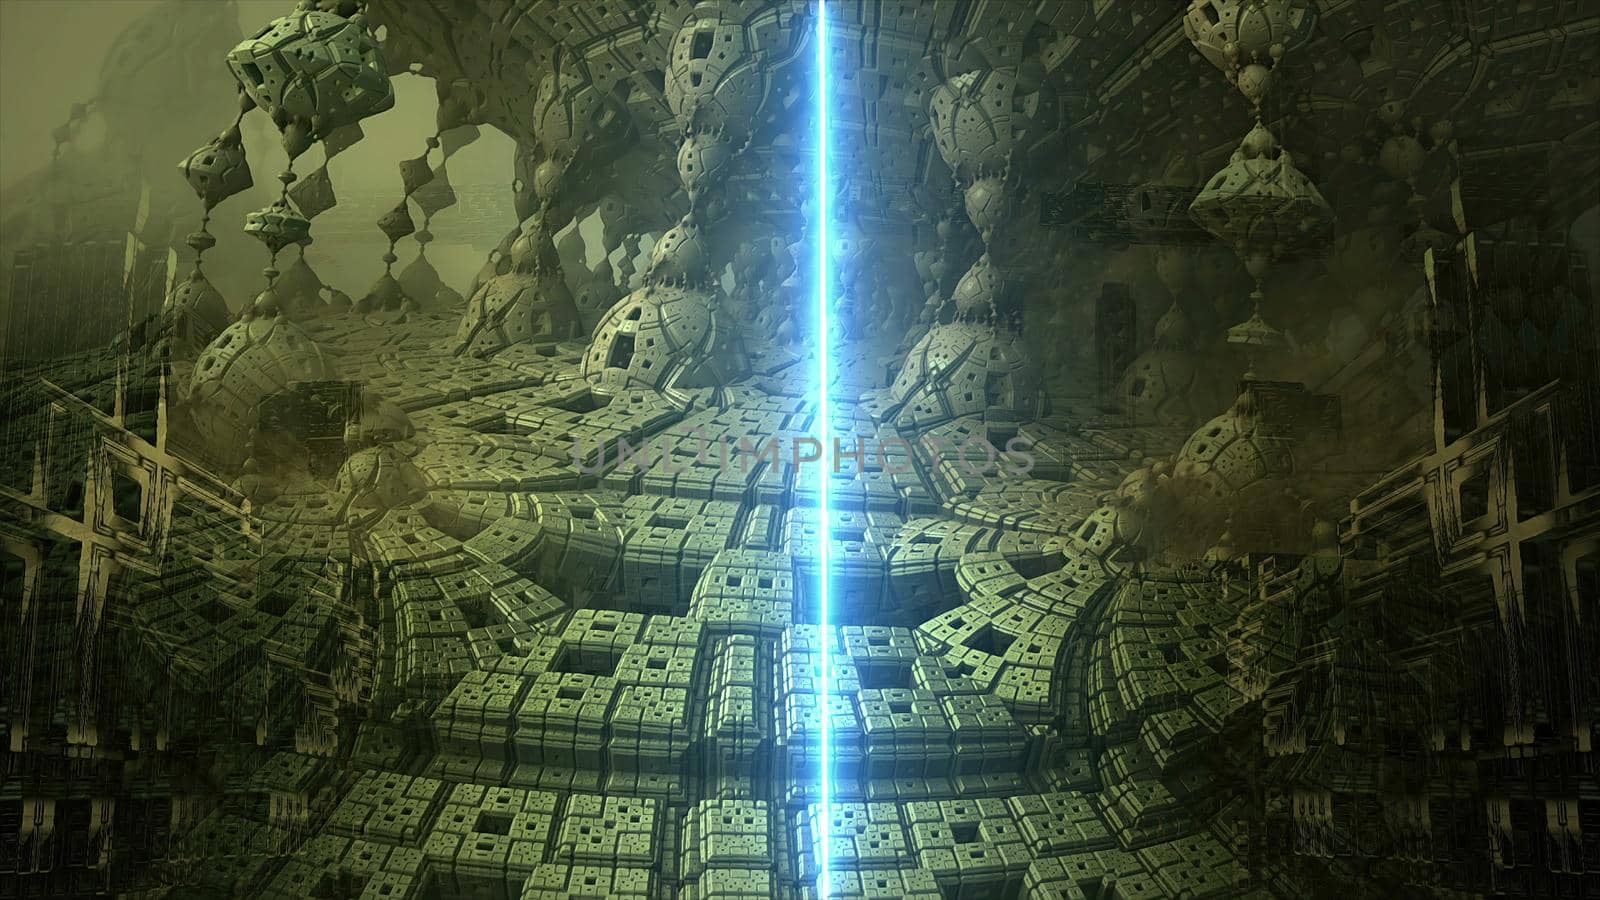 3d illustration - sci-fi landscape with laser beam